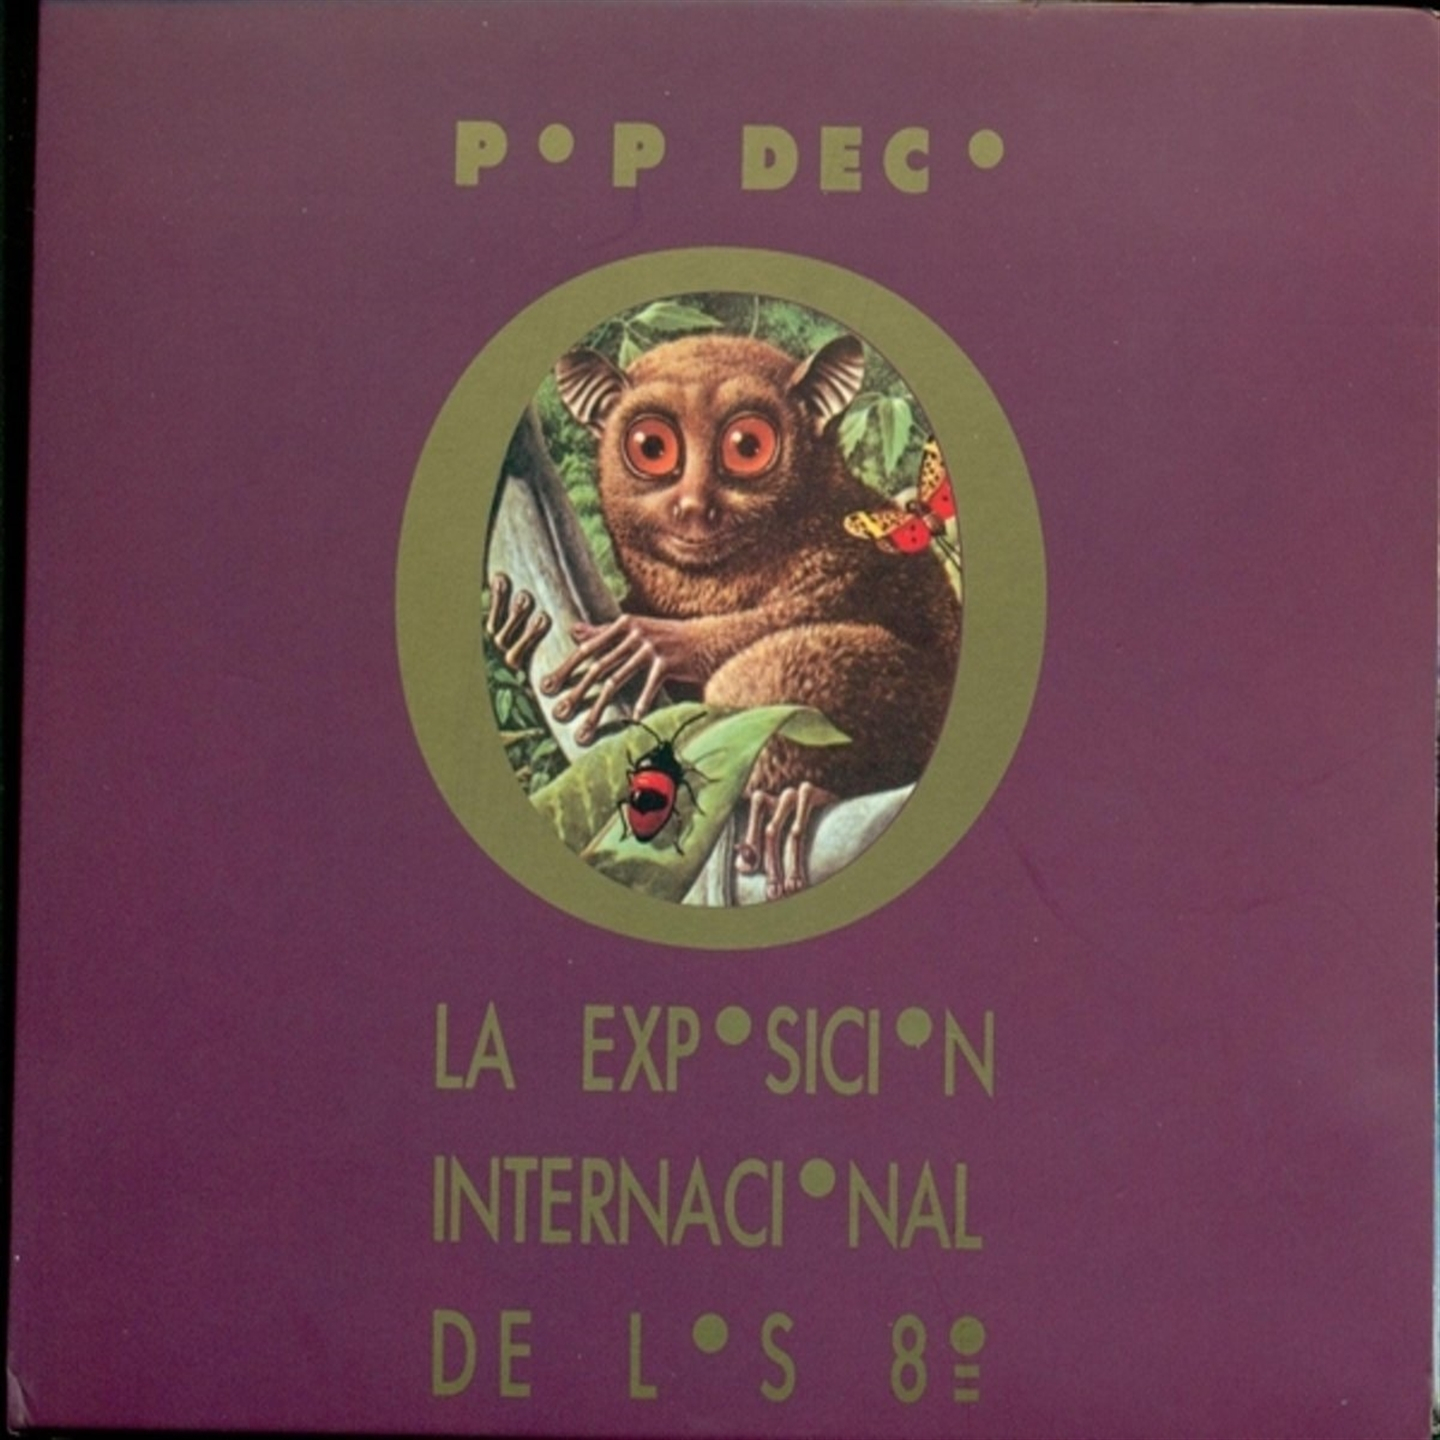 POP DECO - LA EXPOSICION